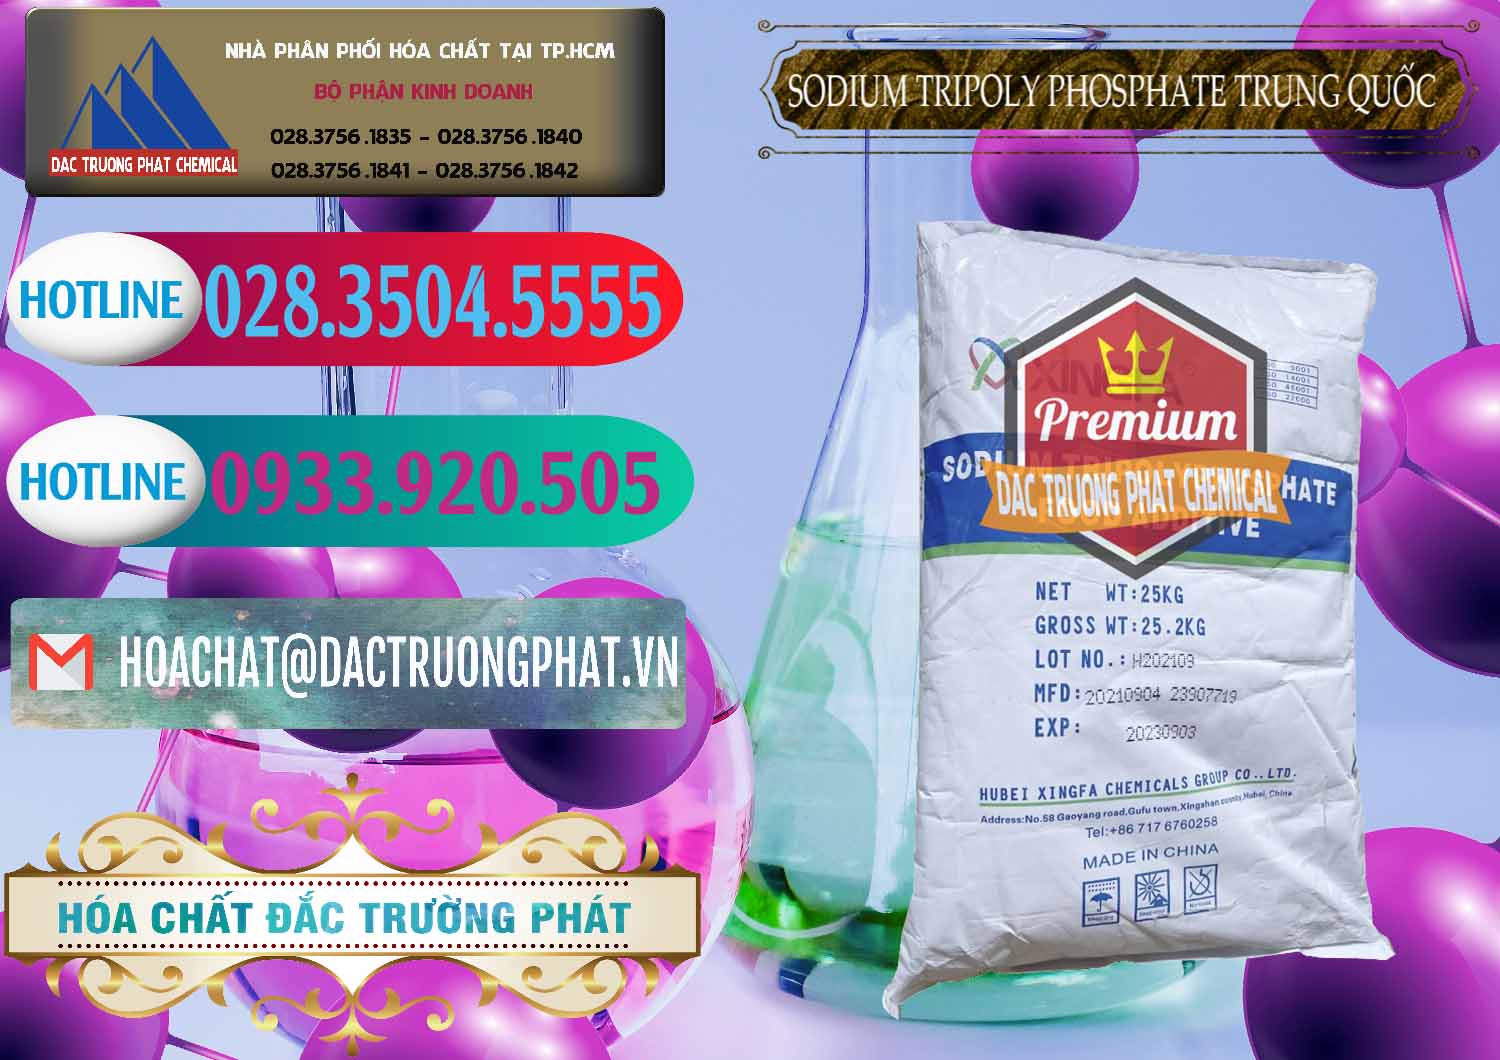 Chuyên bán ( cung cấp ) Sodium Tripoly Phosphate - STPP 96% Xingfa Trung Quốc China - 0433 - Công ty chuyên nhập khẩu - cung cấp hóa chất tại TP.HCM - truongphat.vn